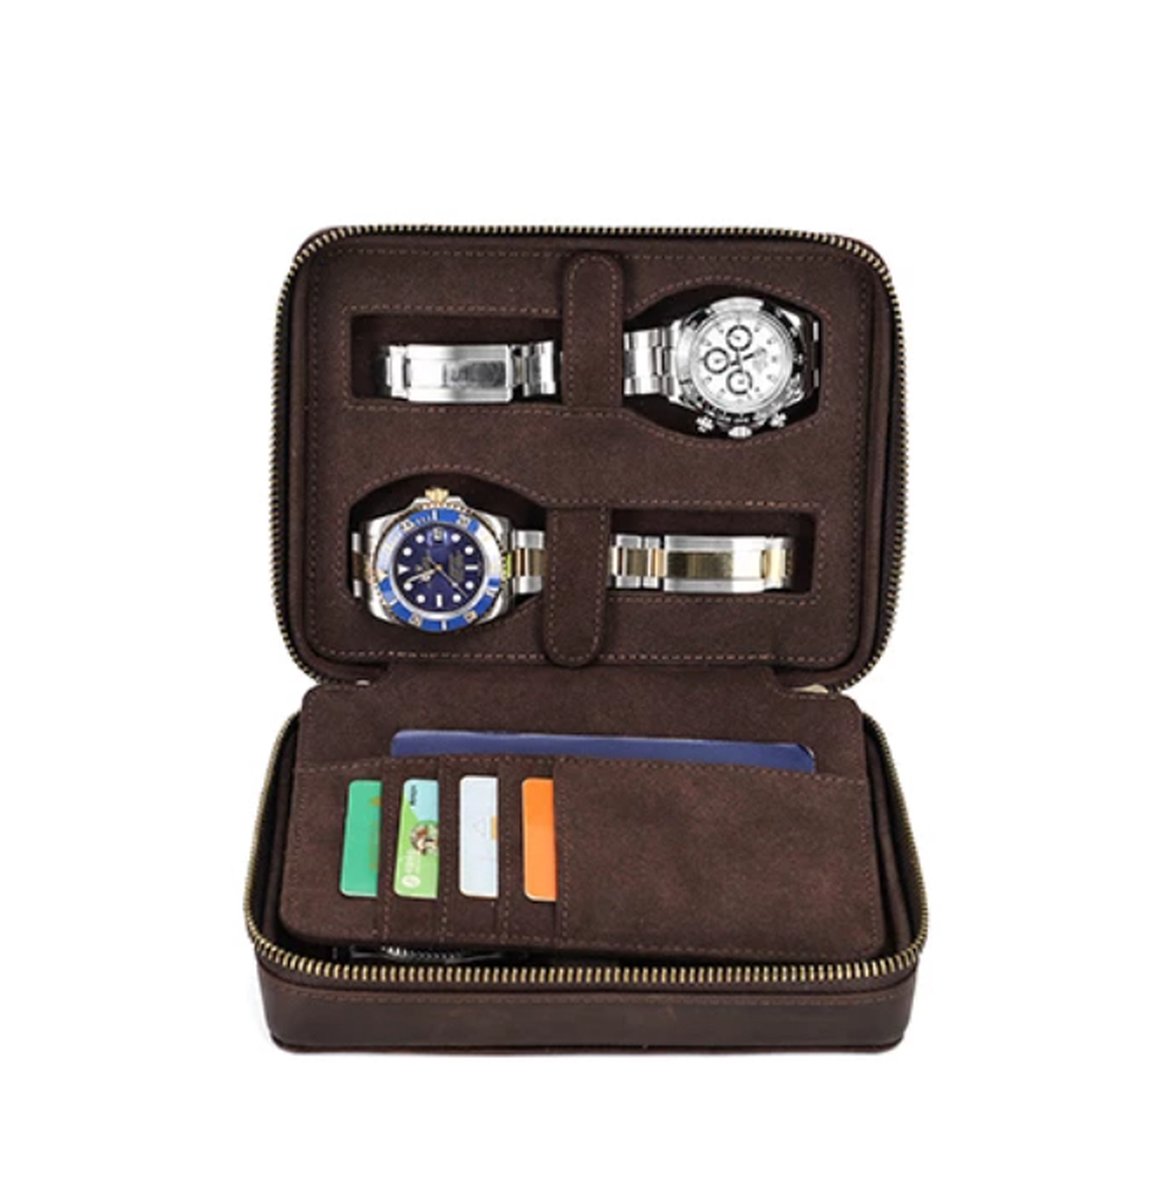 BUGOLINI Caia - Multifunctionele Horloge Houder - Met Sleuven Voor 4 Pasjes En 1 Sleuf Voor Paspoort - Echt Leer - Bruin